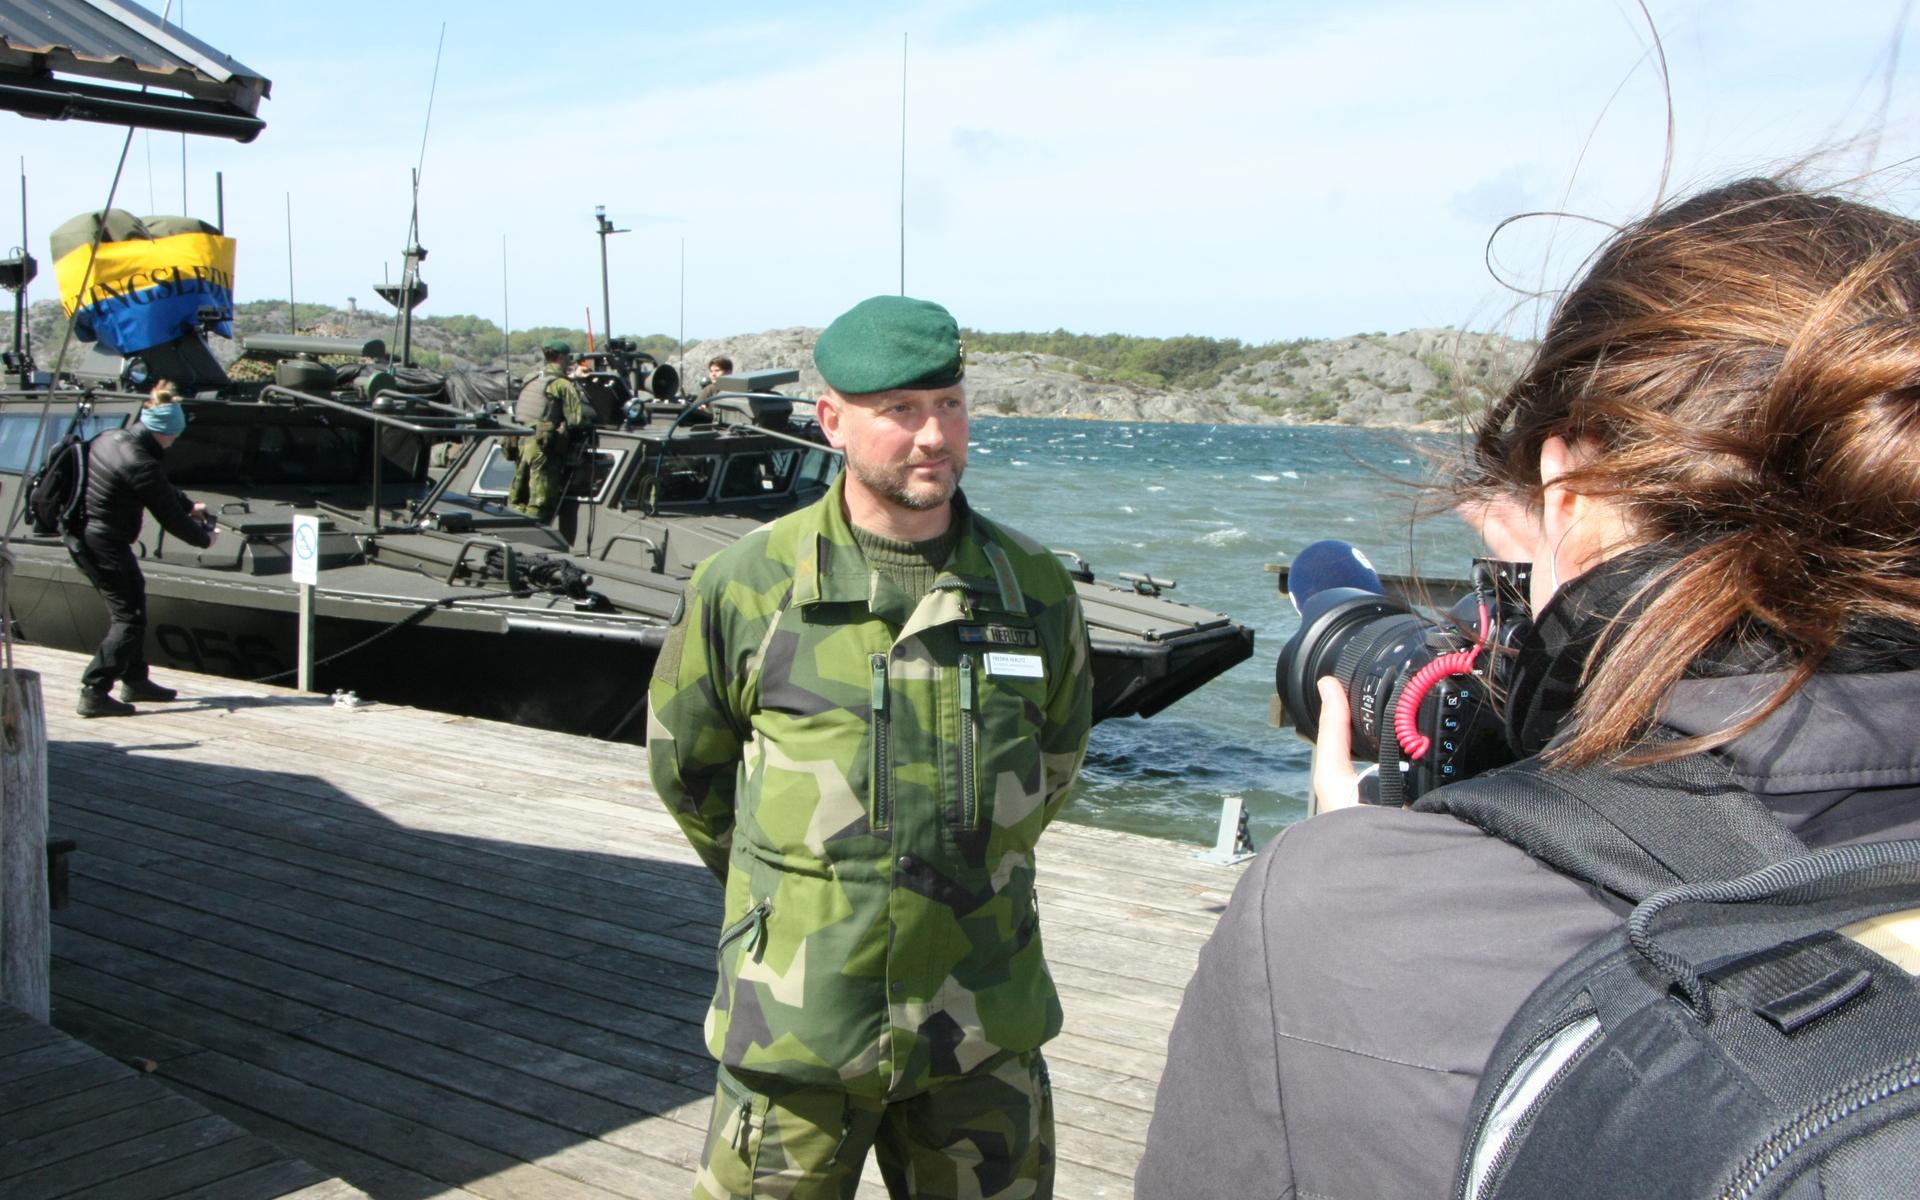 Regementschefen Fredrik Herlitz intervjuas av media på Krokholmen.